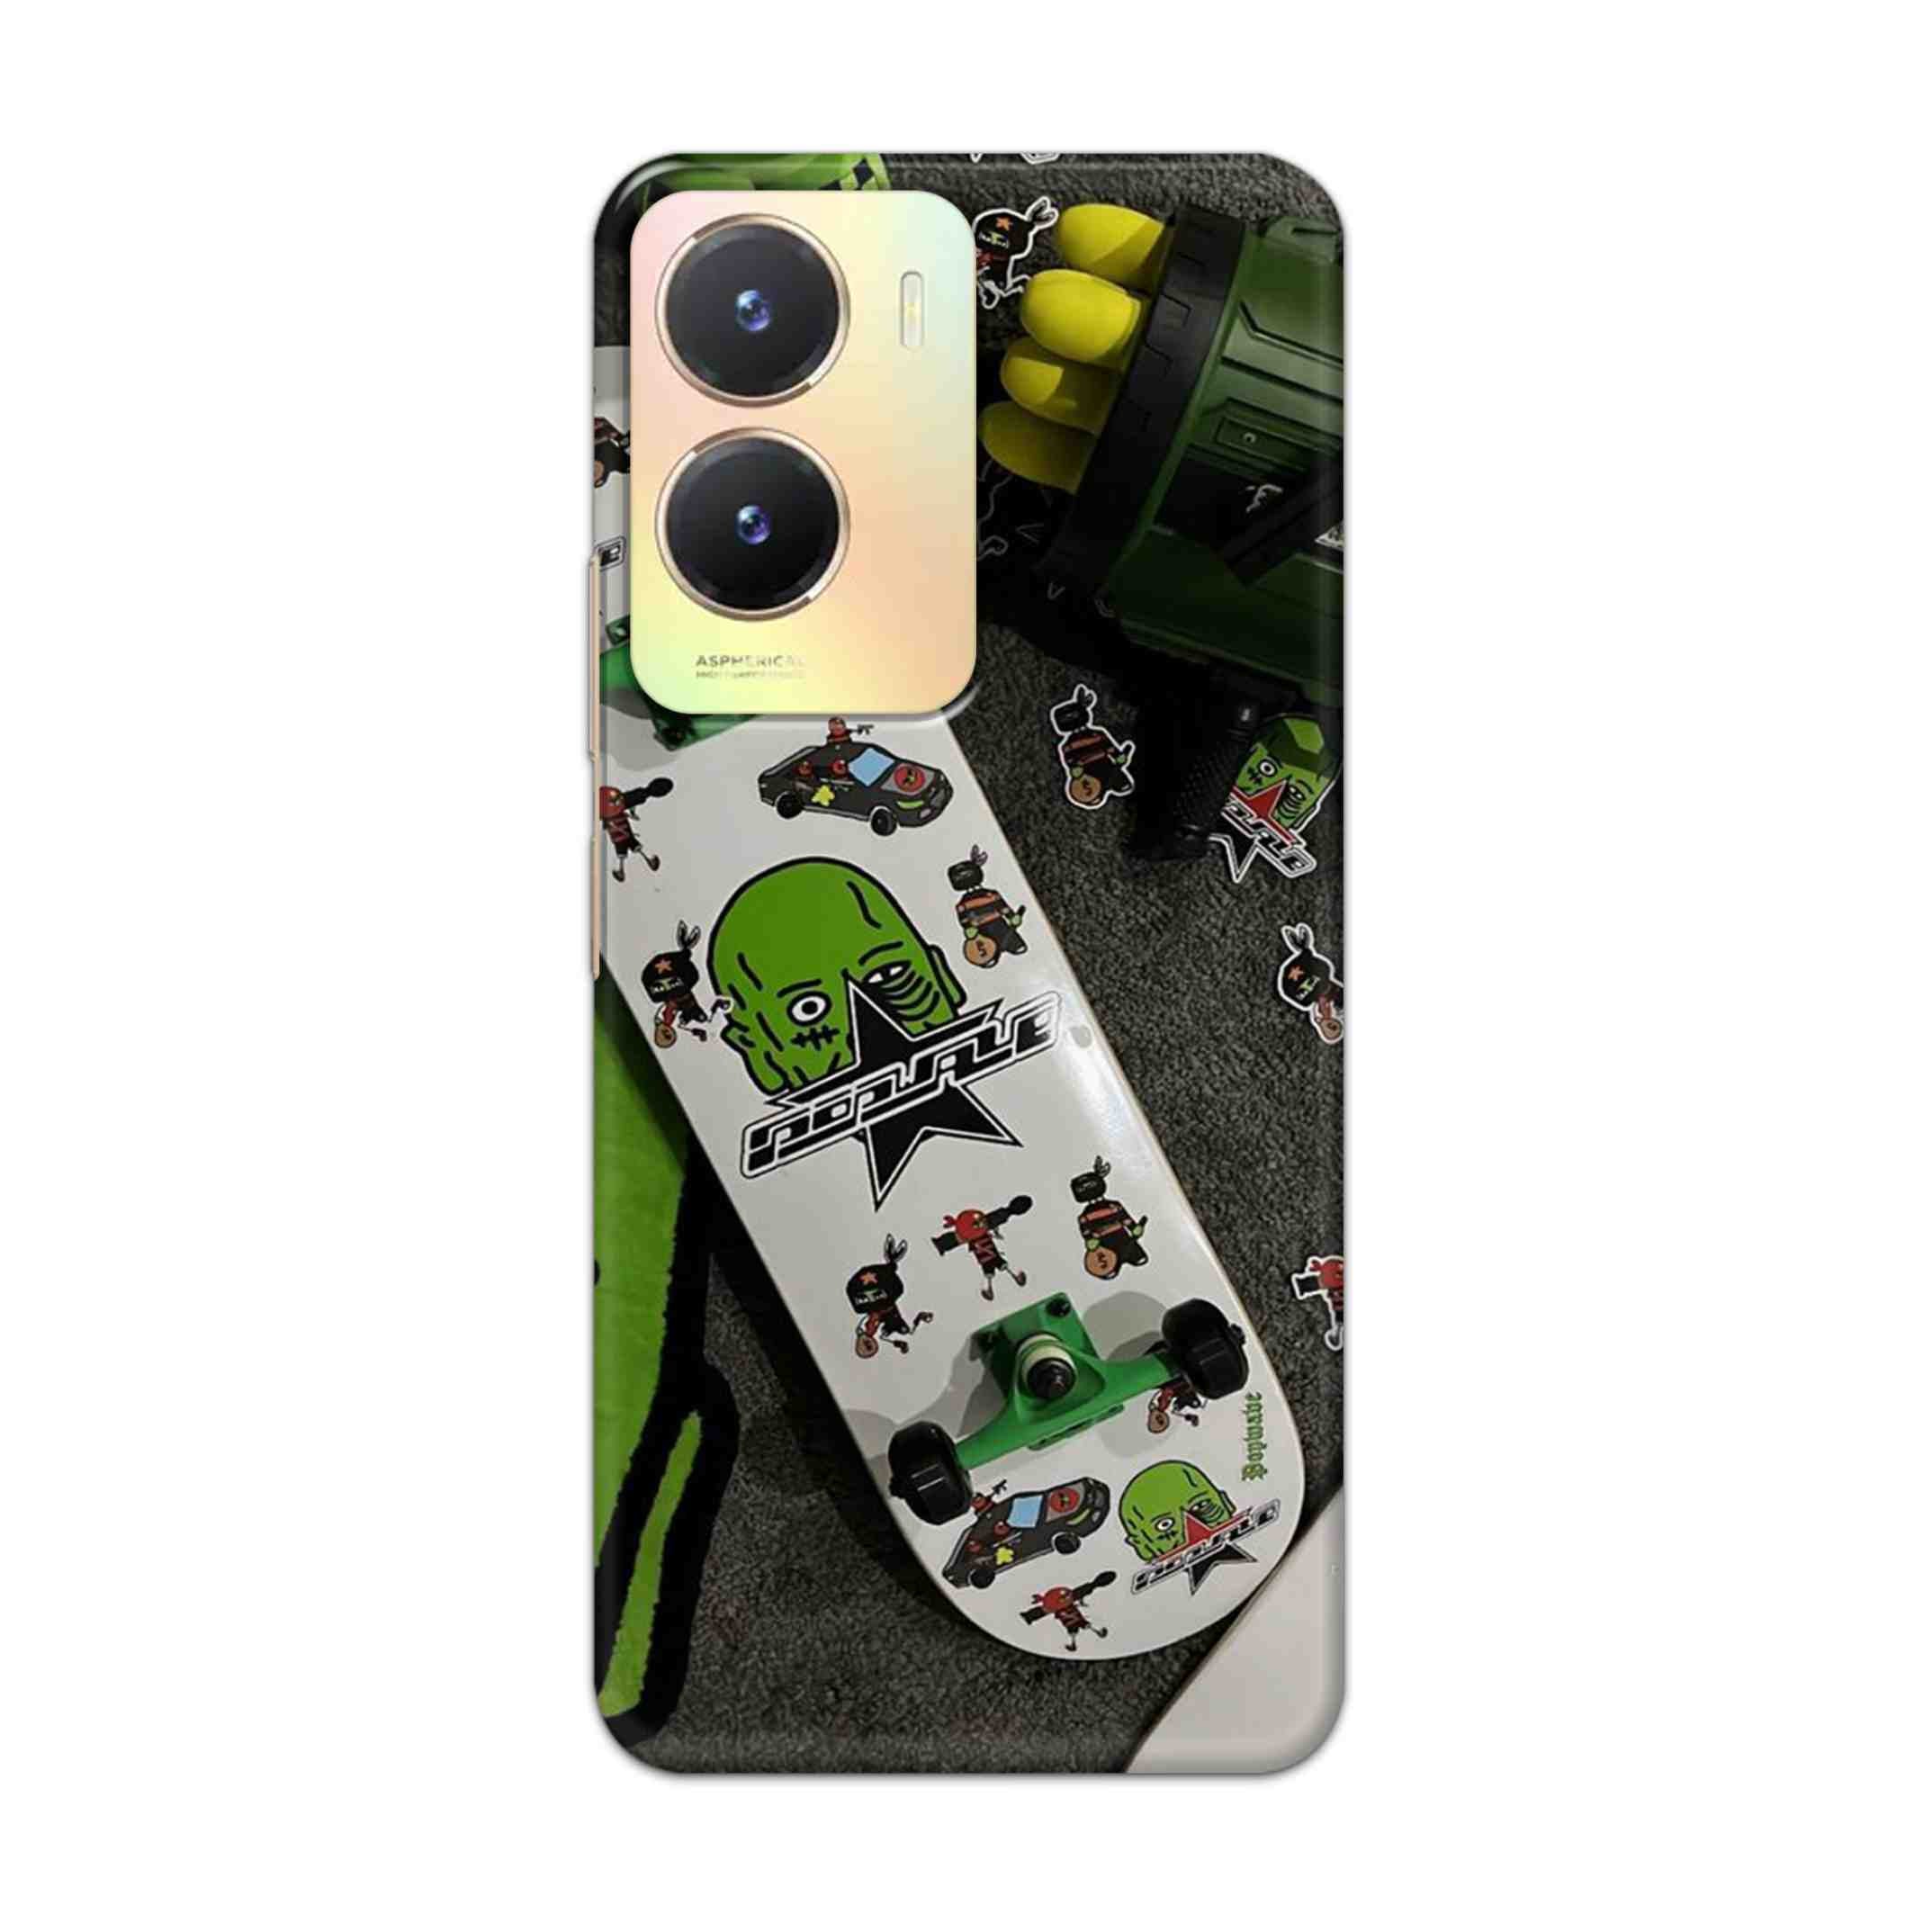 Buy Hulk Skateboard Hard Back Mobile Phone Case Cover For Vivo T2x Online